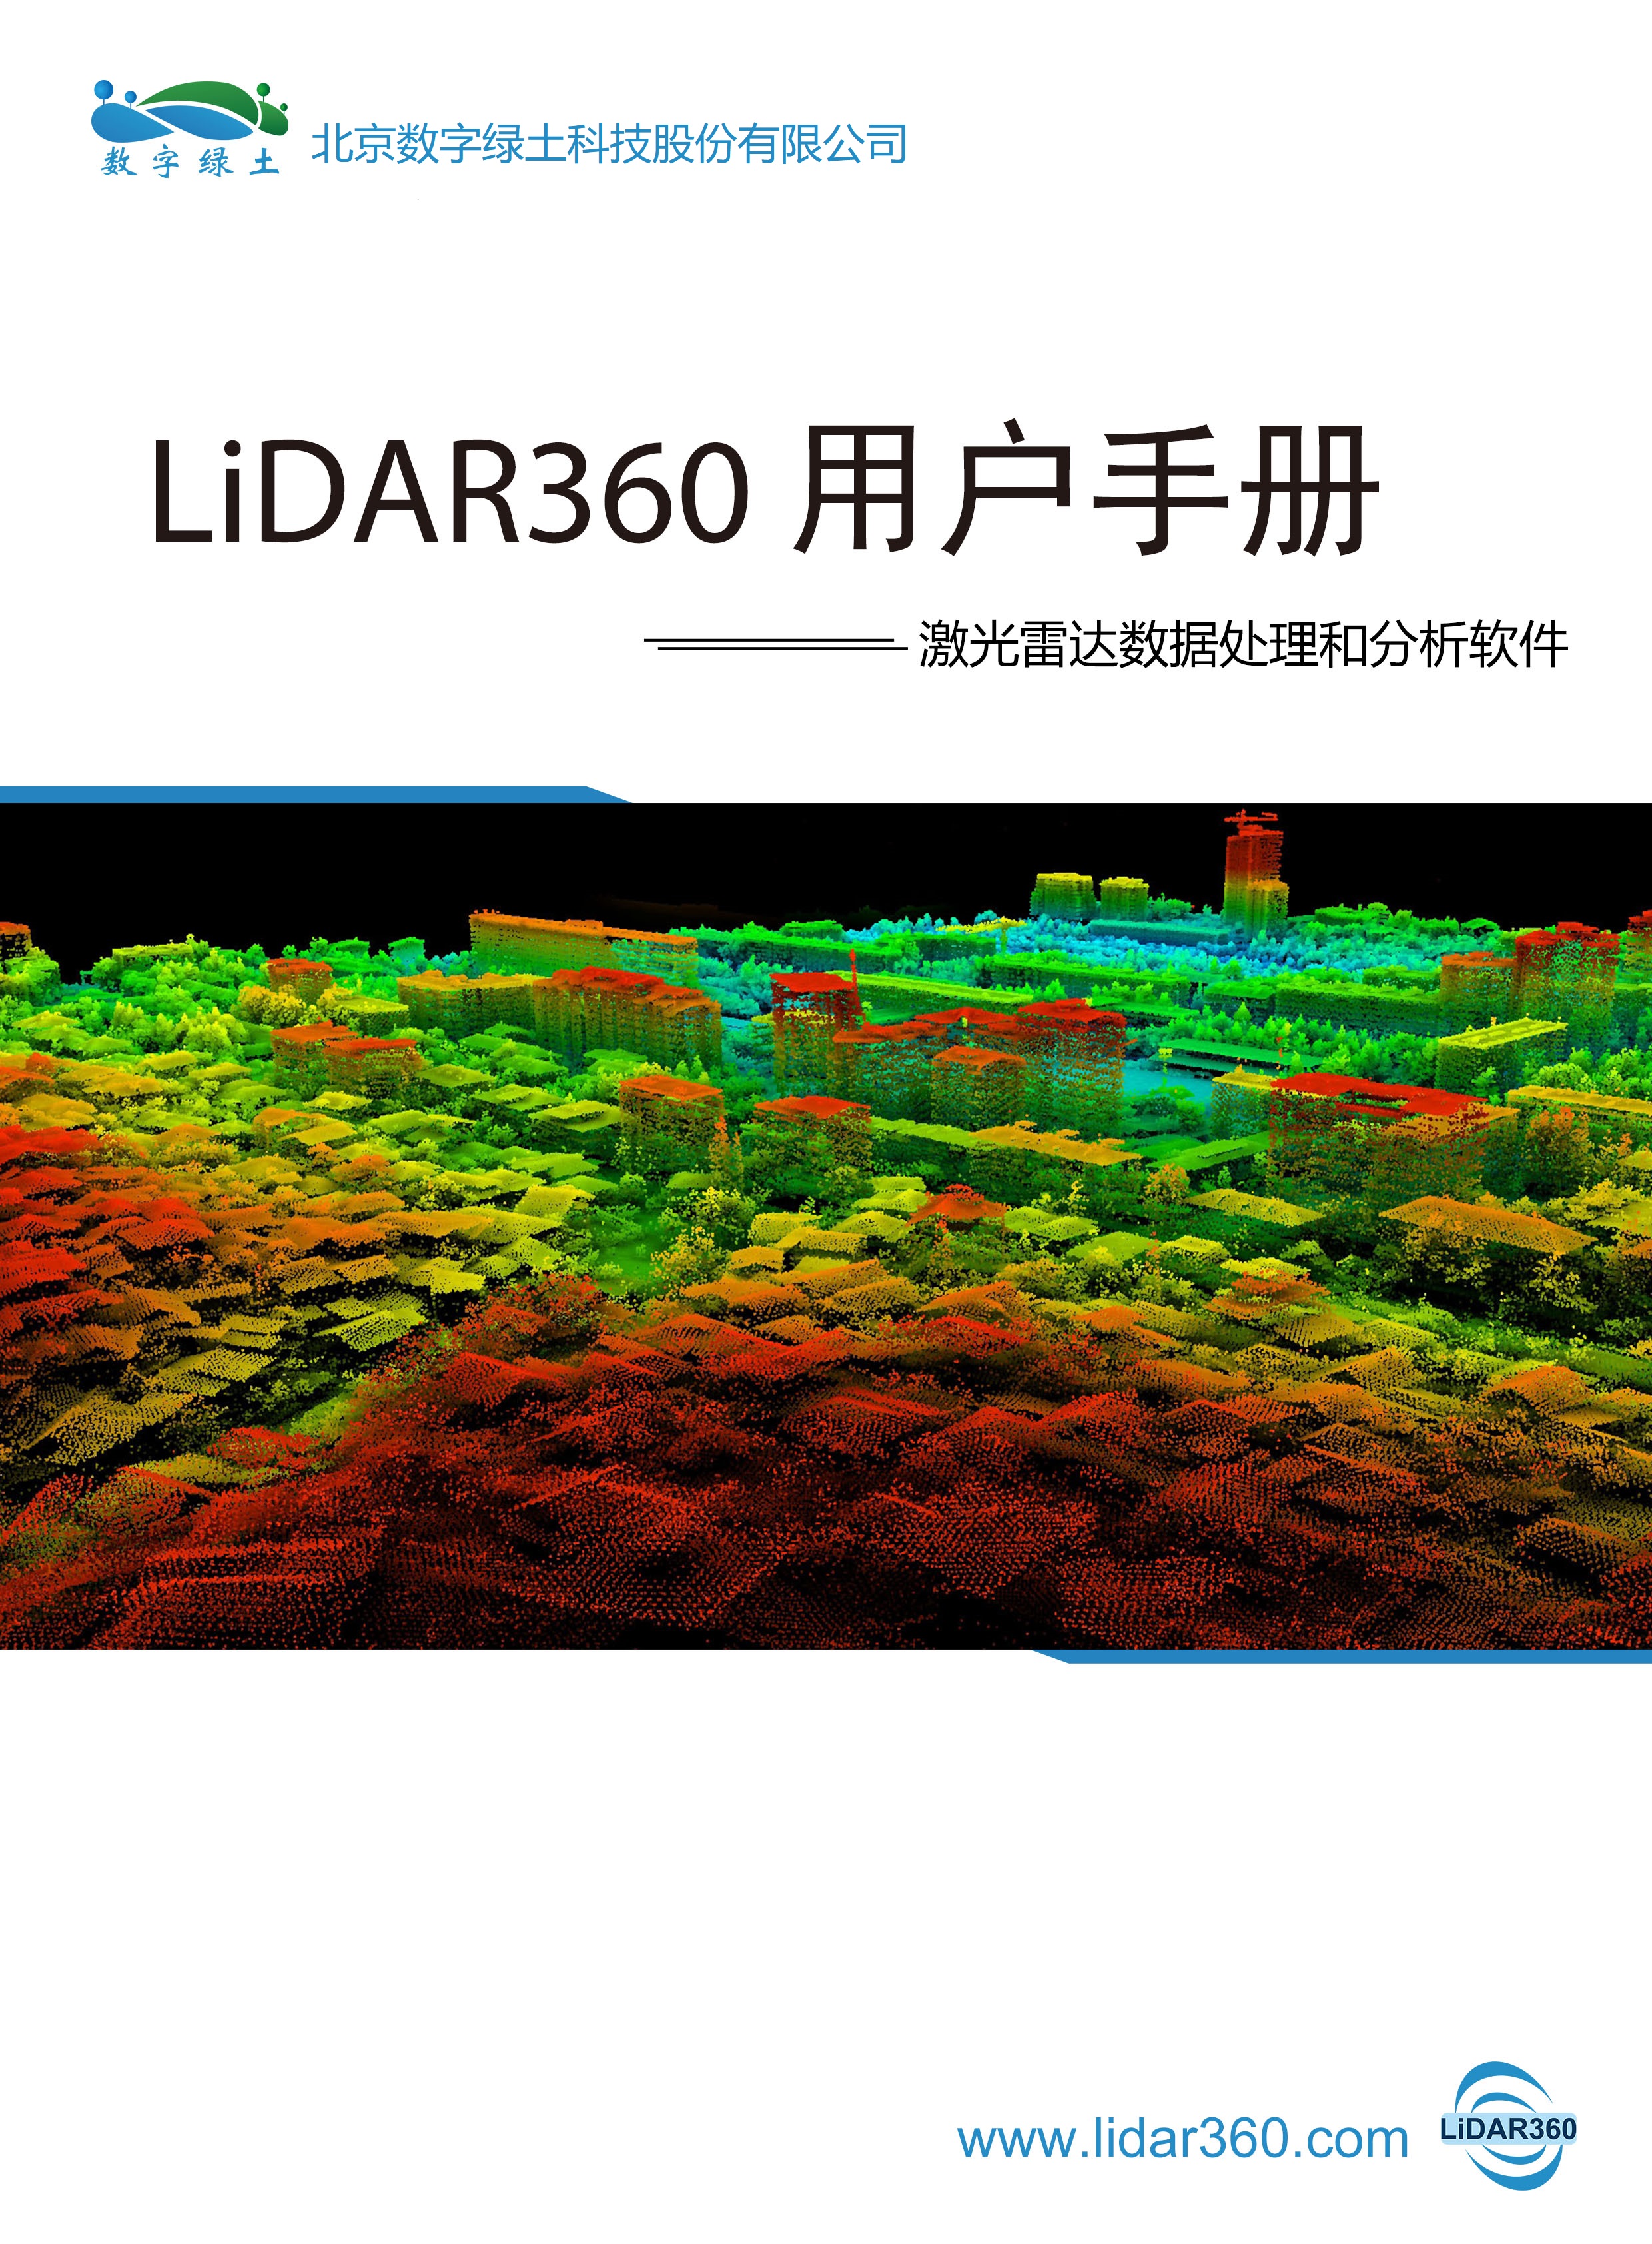 LiDAR360 Startup